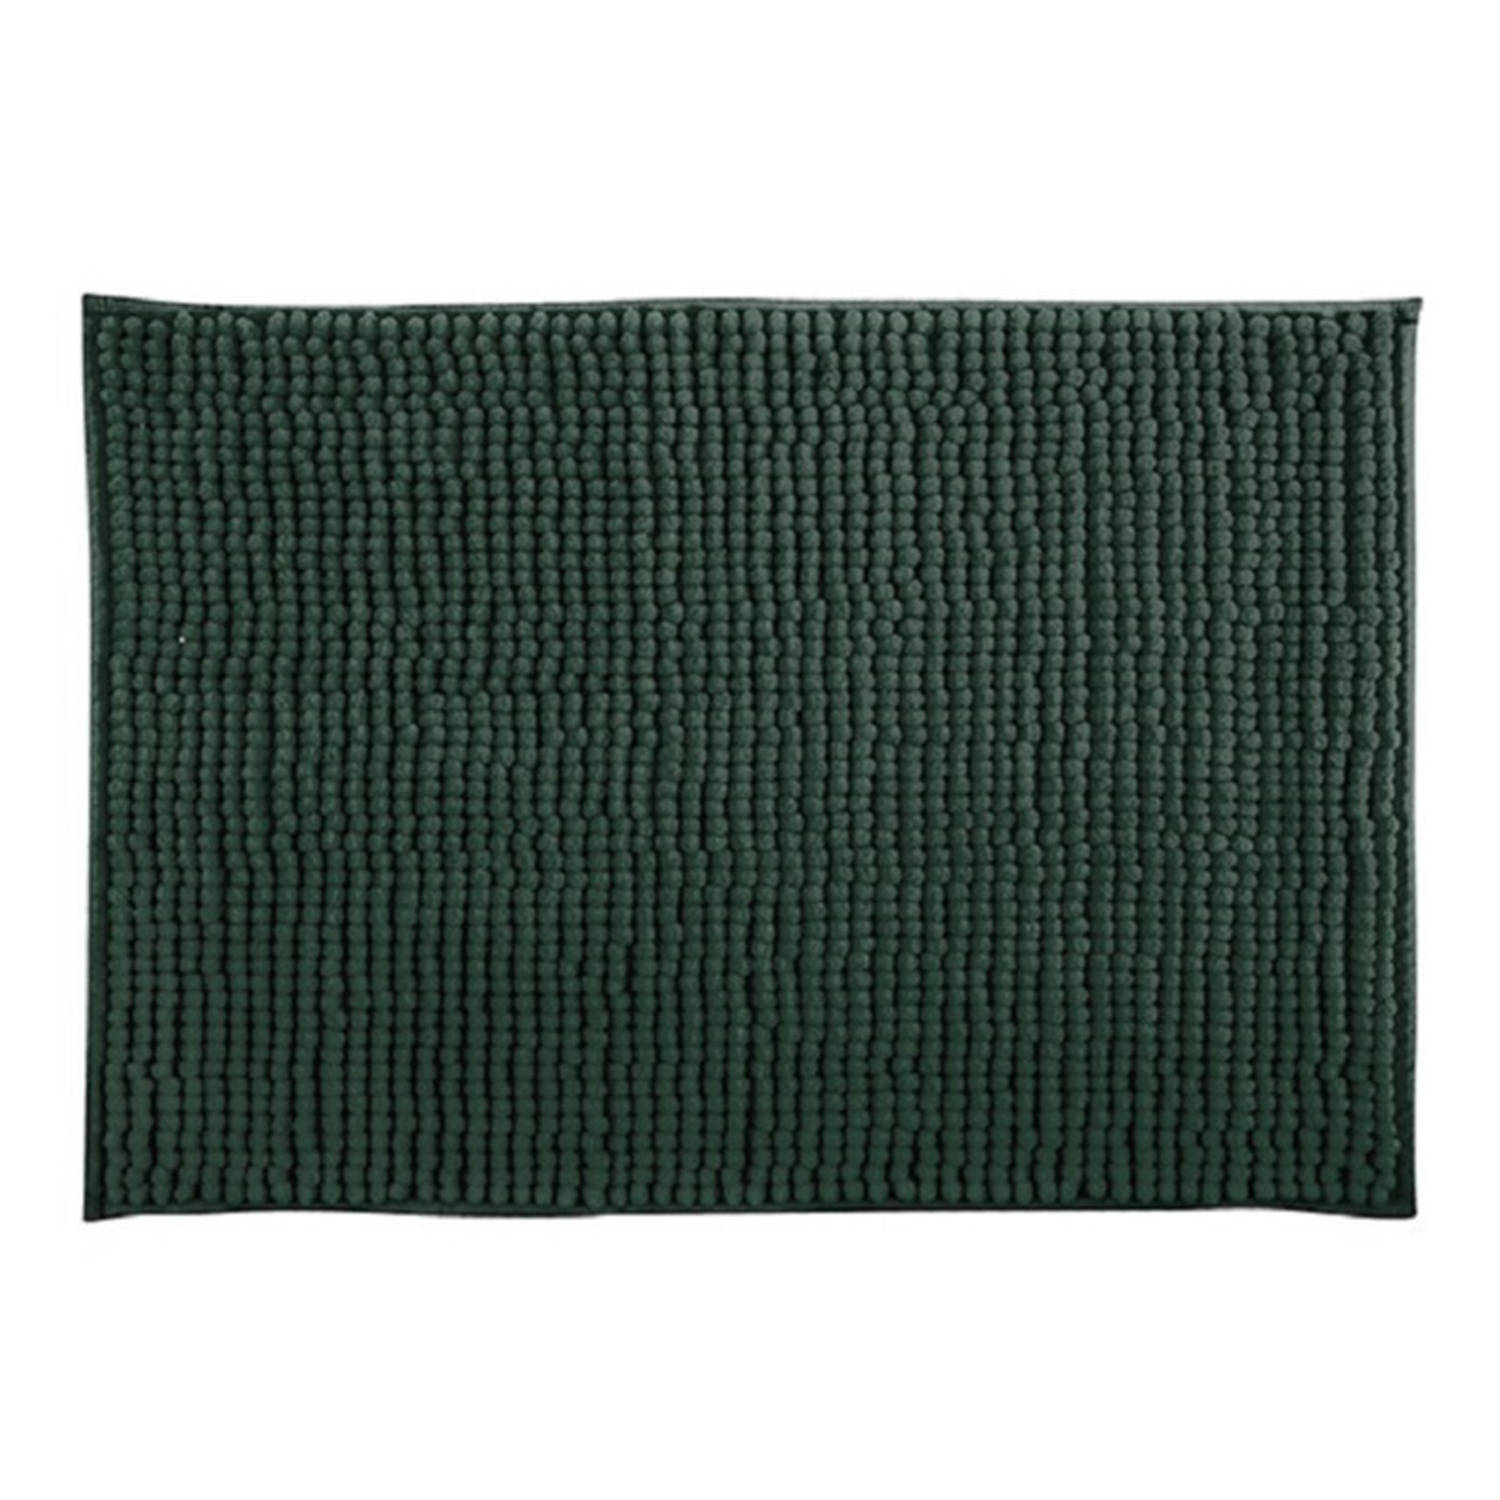 MSV Badkamerkleed/badmat tapijtje voor op de vloer - donkergroen - 50 x 80 cm - Microvezel - anti slip